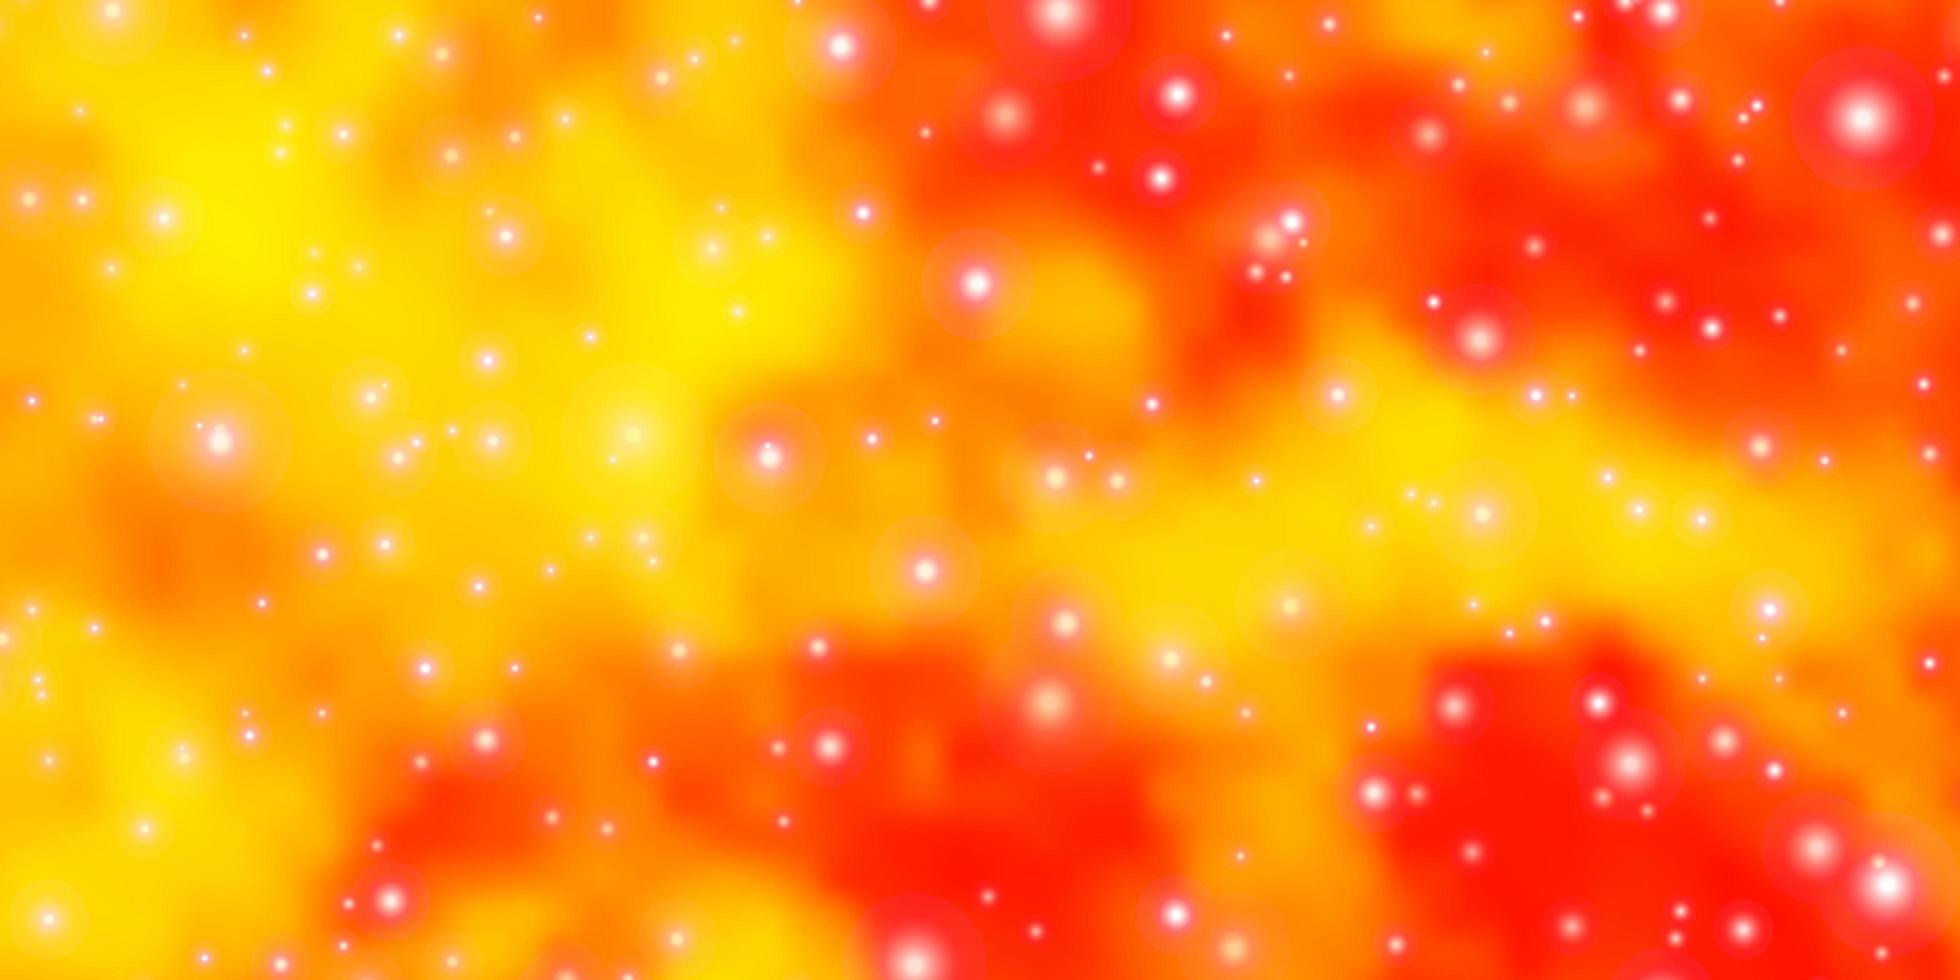 textura de vector naranja claro con hermosas estrellas diseño decorativo borroso en estilo simple con patrón de estrellas para páginas de destino de sitios web